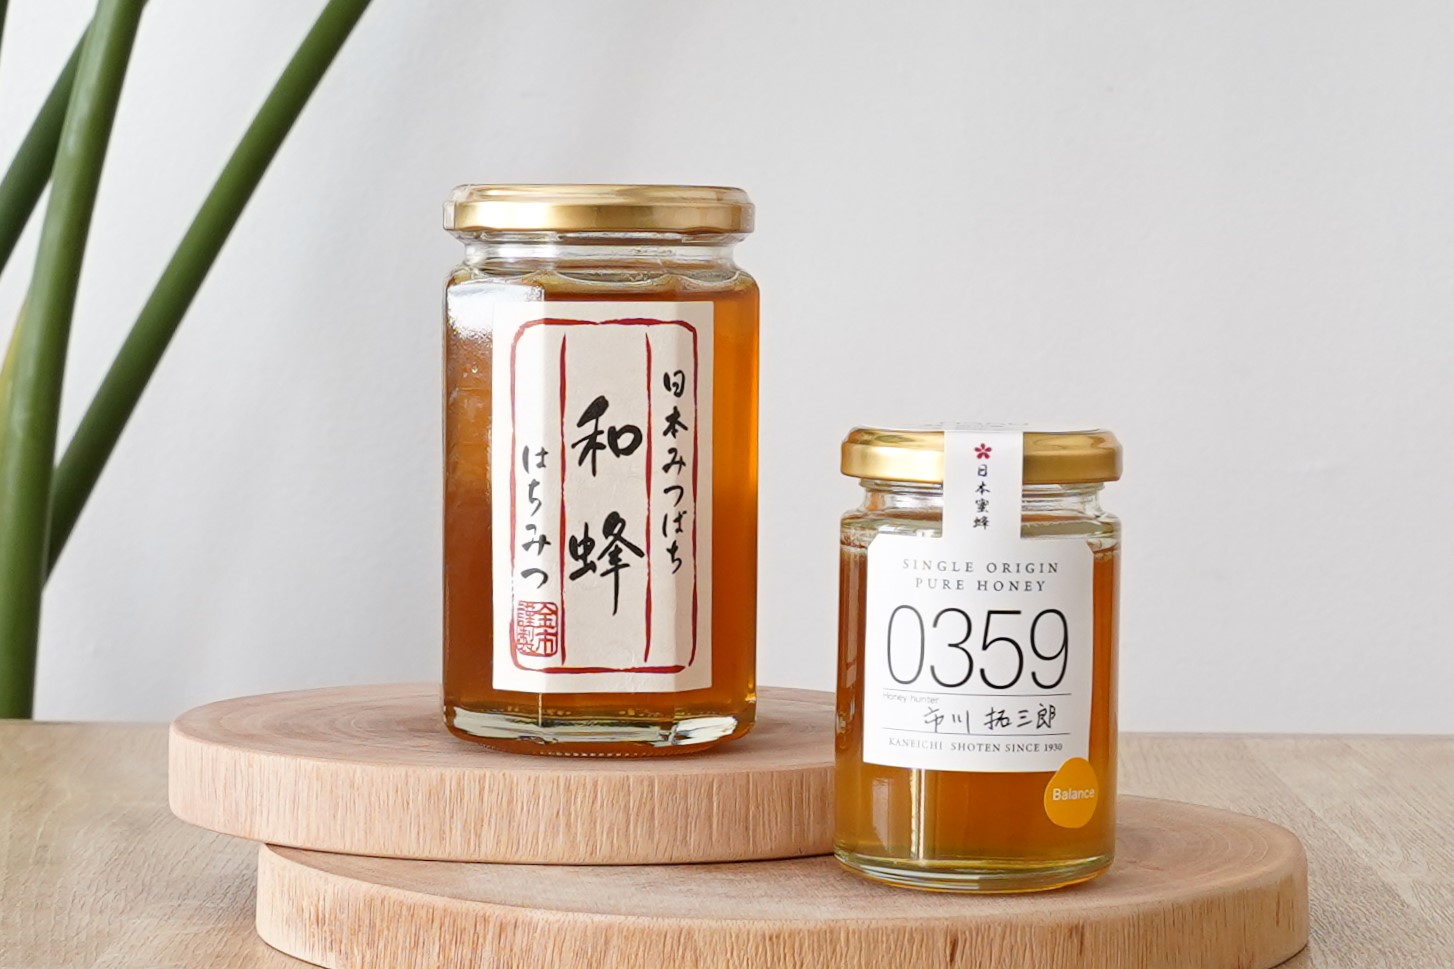 幻の蜂蜜」とも言われる貴重な蜂蜜 日本の在来種であるニホンミツバチ